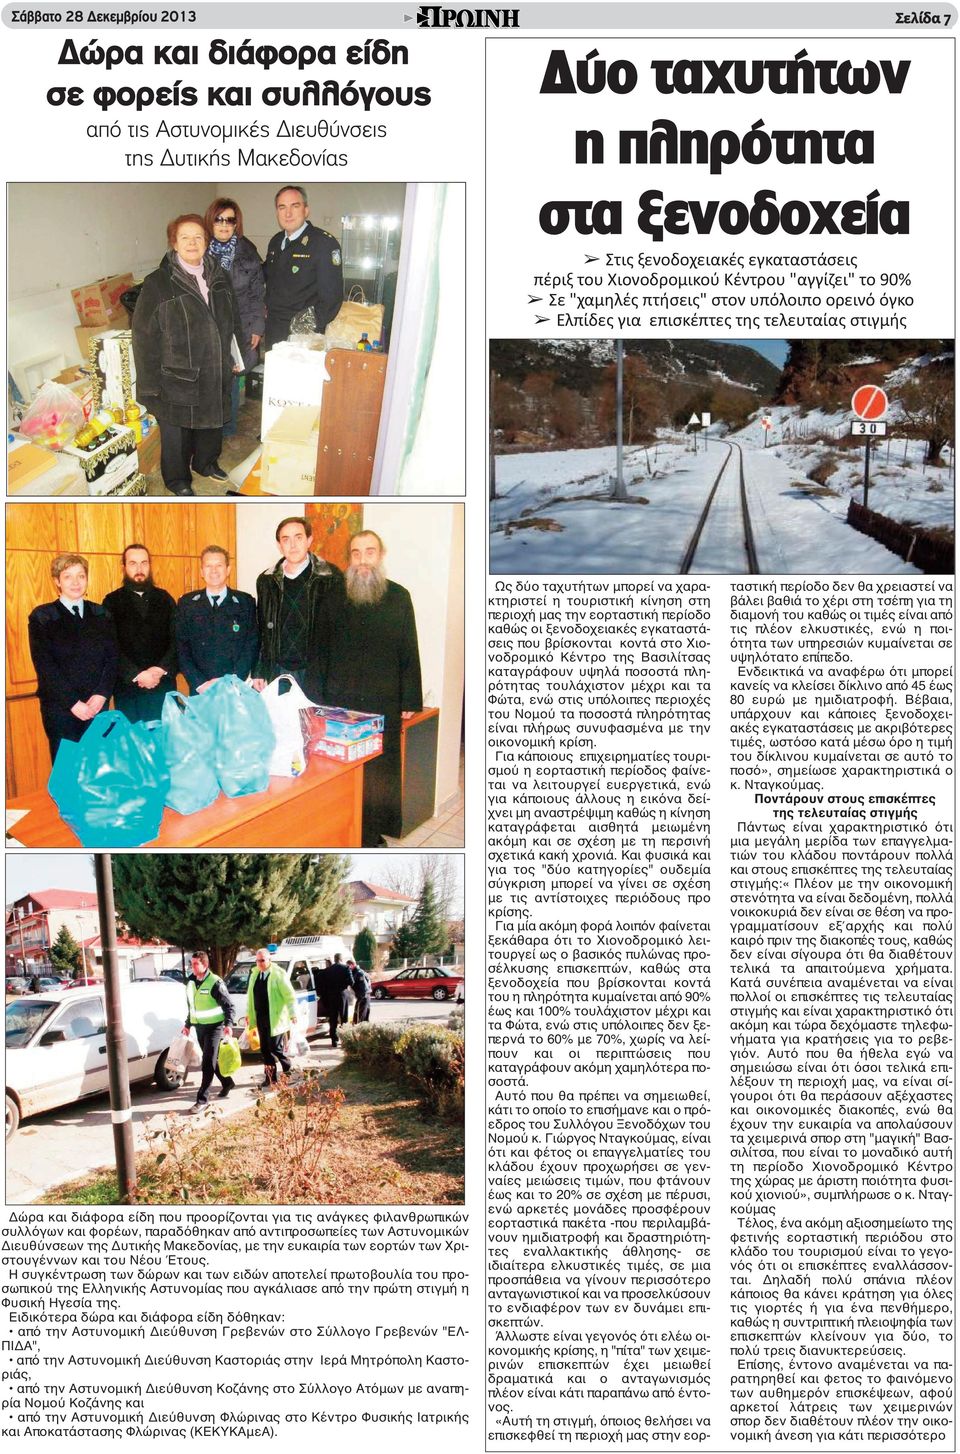 τις ανάγκες φιλανθρωπικών συλλόγων και φορέων, παραδόθηκαν από αντιπροσωπείες των Αστυνομικών Διευθύνσεων της Δυτικής Μακεδονίας, με την ευκαιρία των εορτών των Χριστουγέννων και του Νέου Έτους.